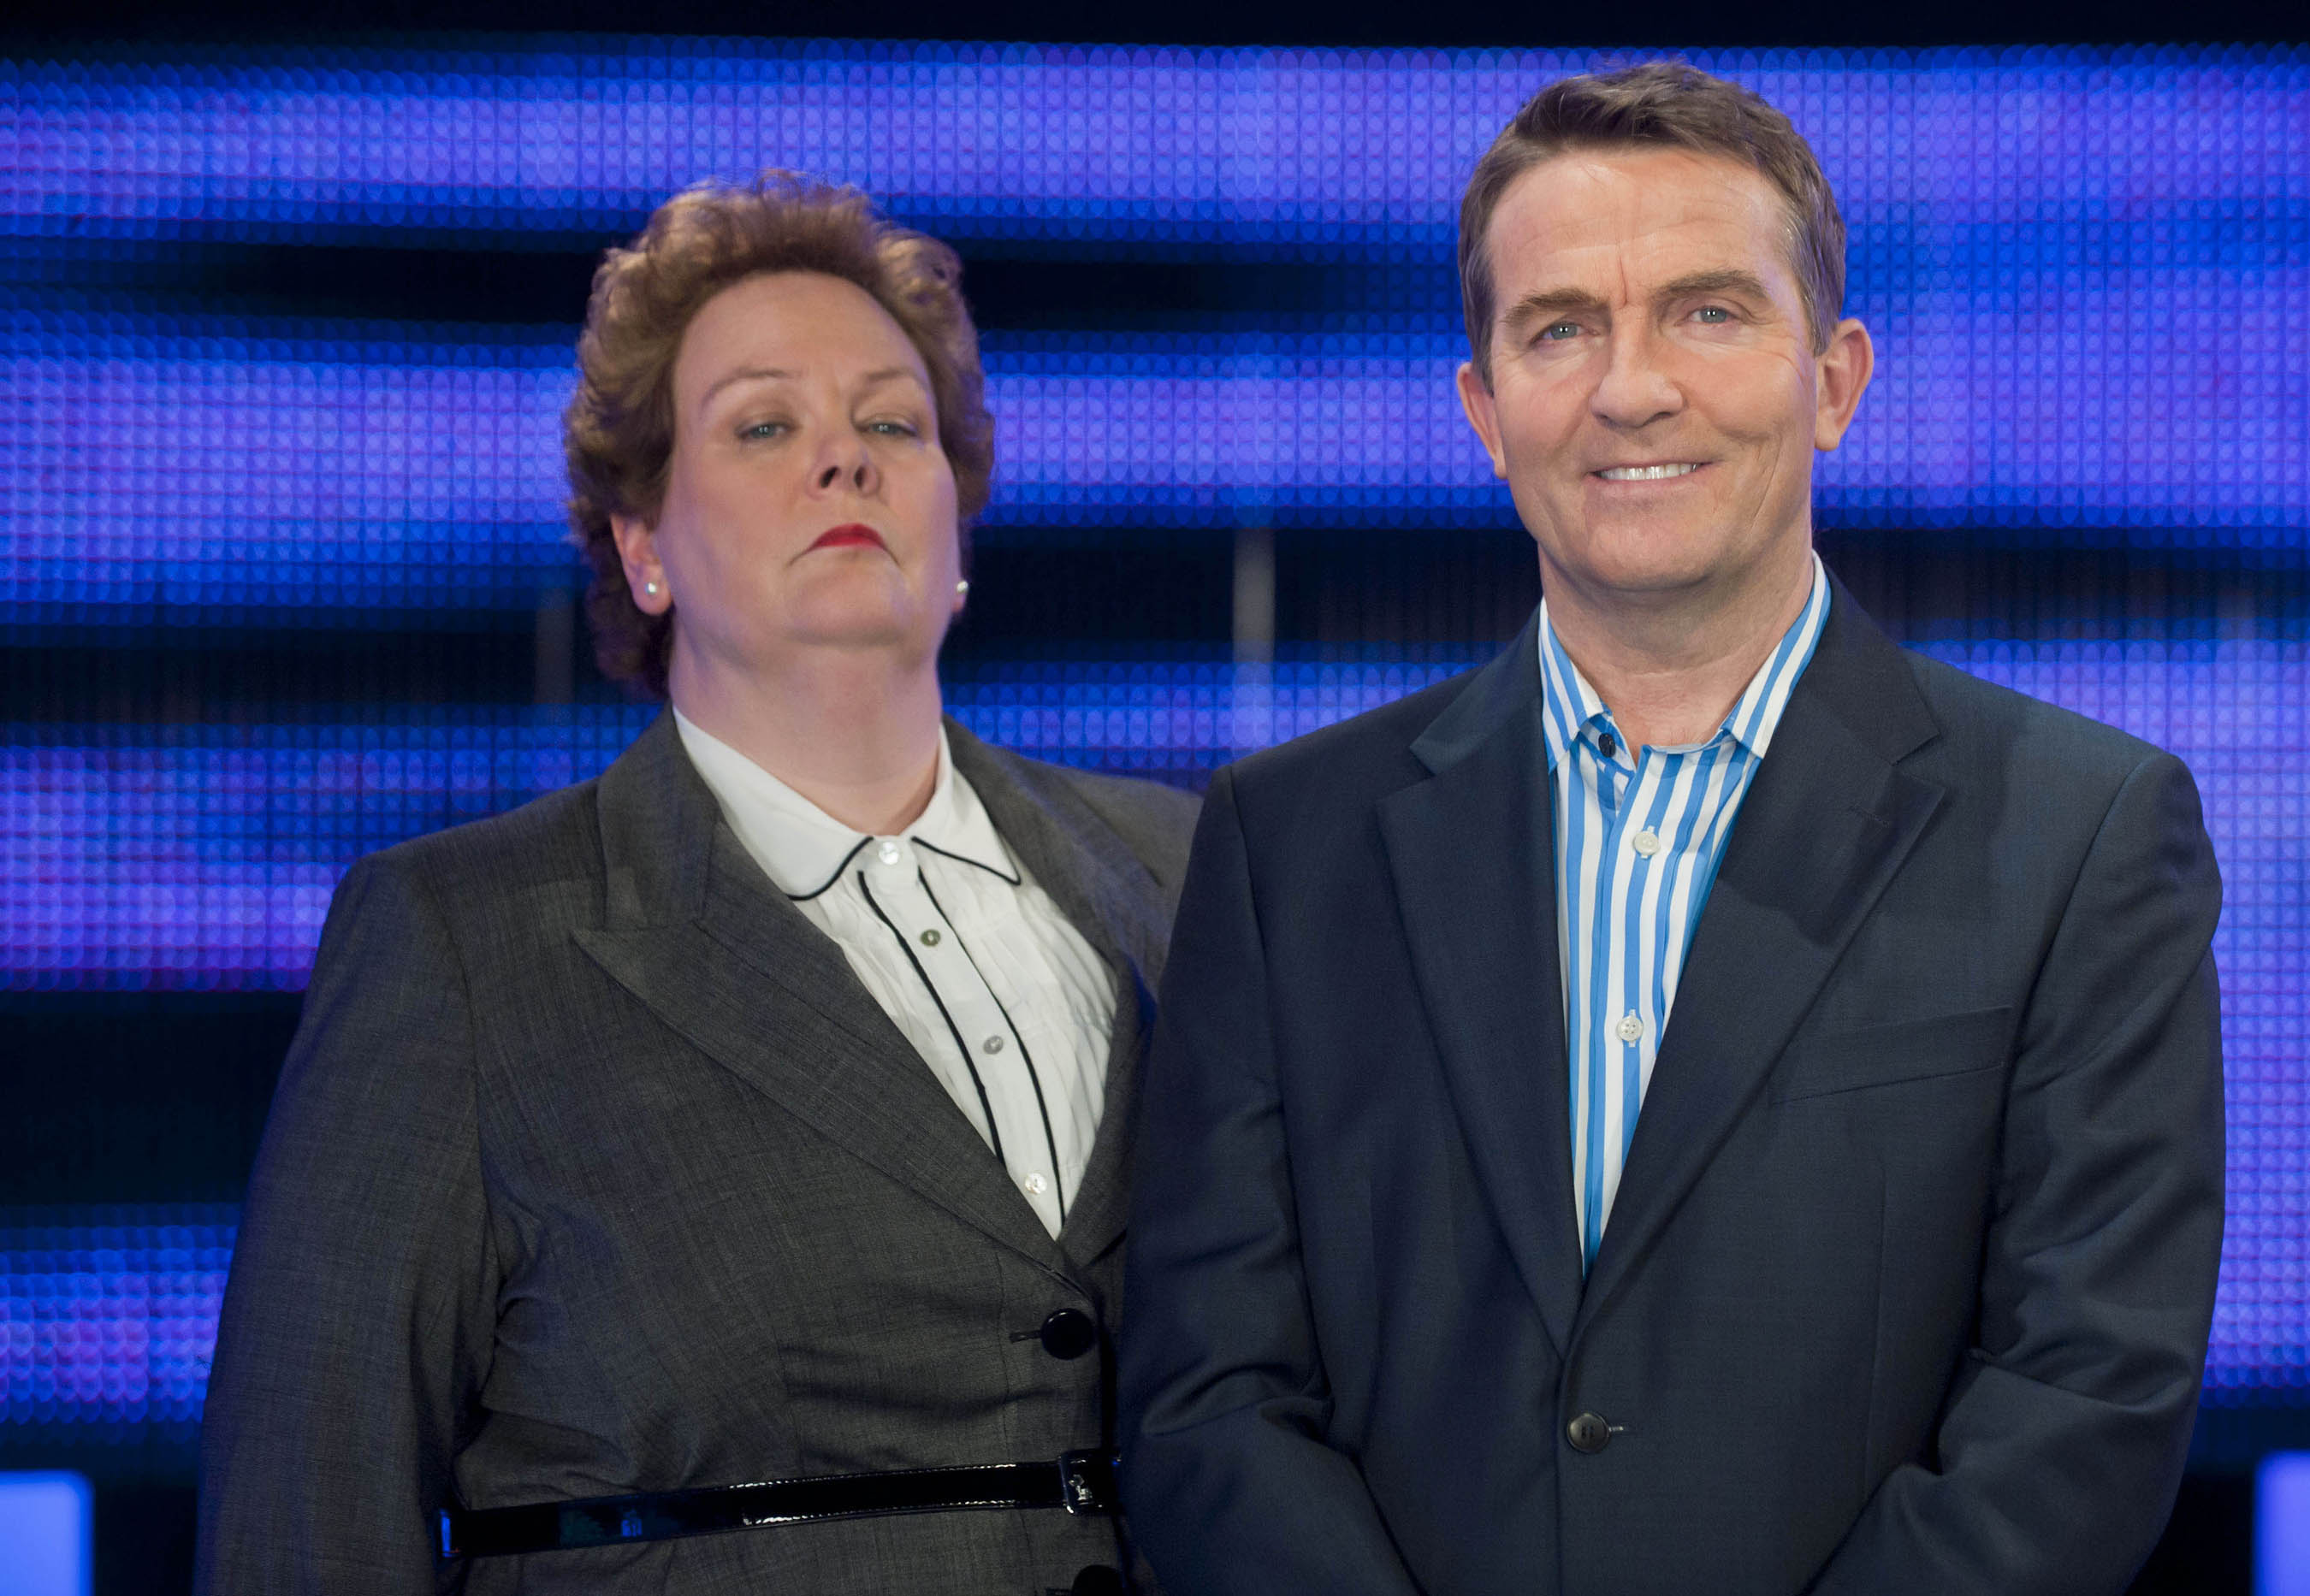 Bradley Walsh presents ITV Daytime quiz The Chase